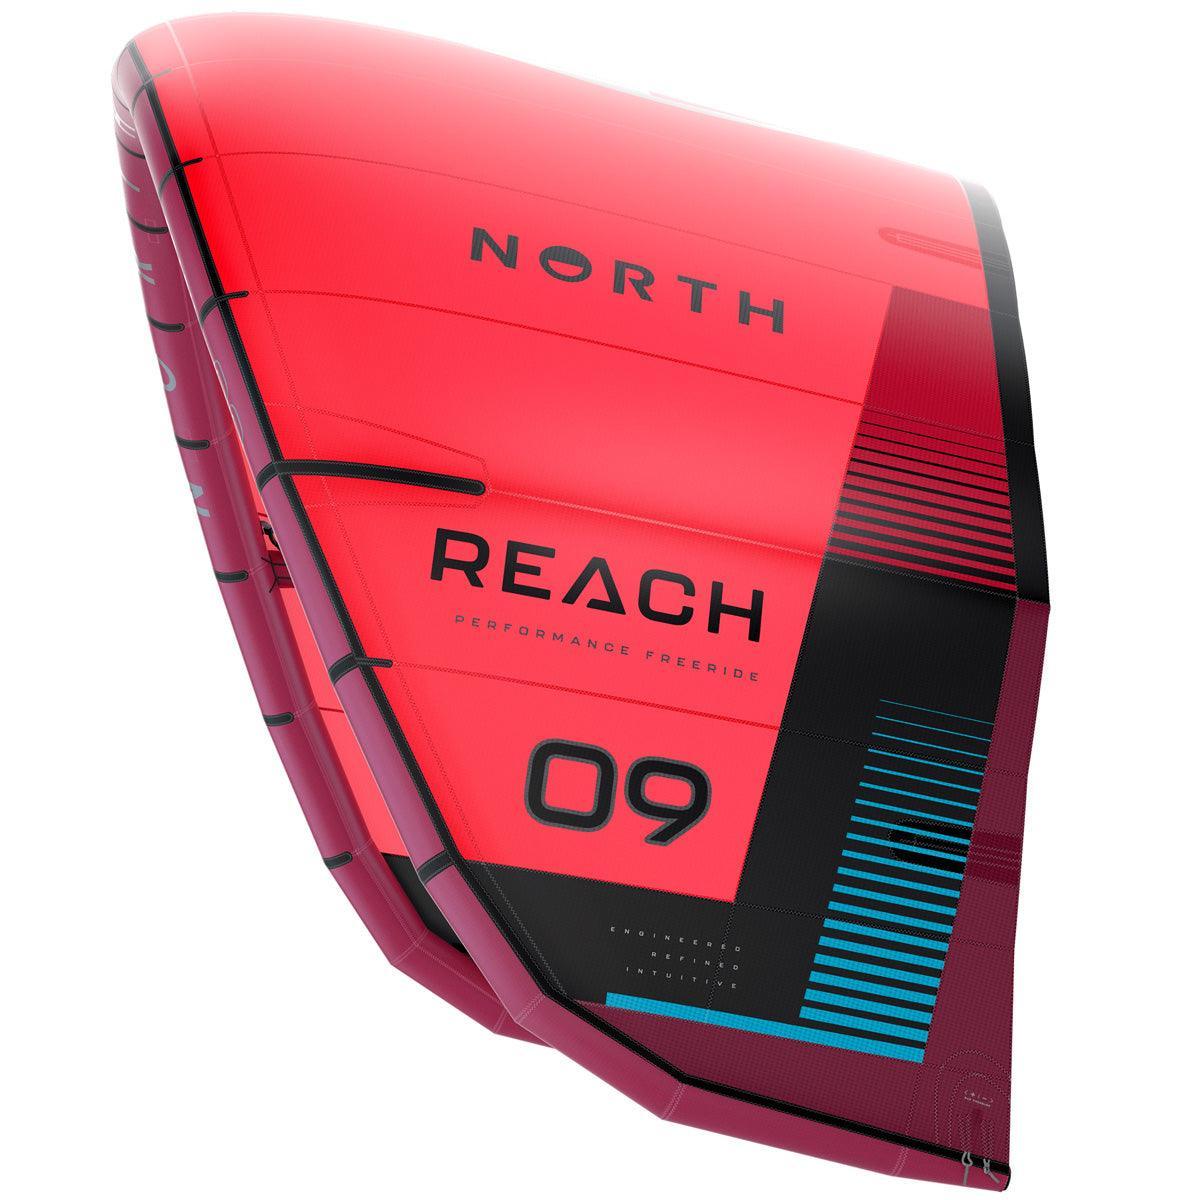 North Reach - Powerkiteshop